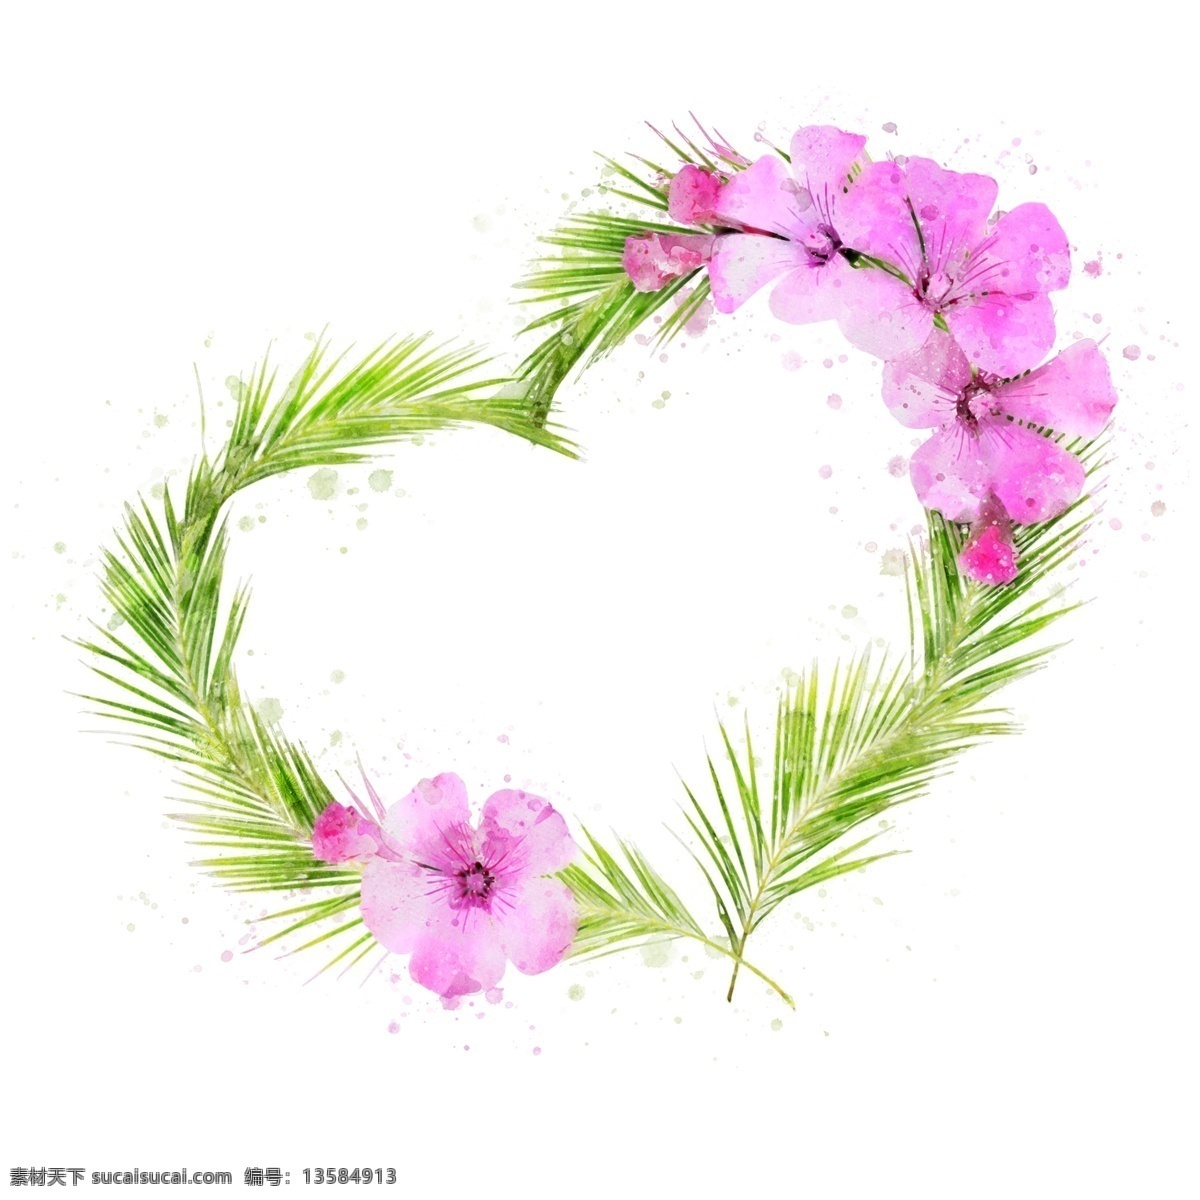 手绘 鲜花 爱心 型 粉色 植物 边框 元素 桃花 手绘边框 花卉 原创 爱心边框 植物边框 水彩